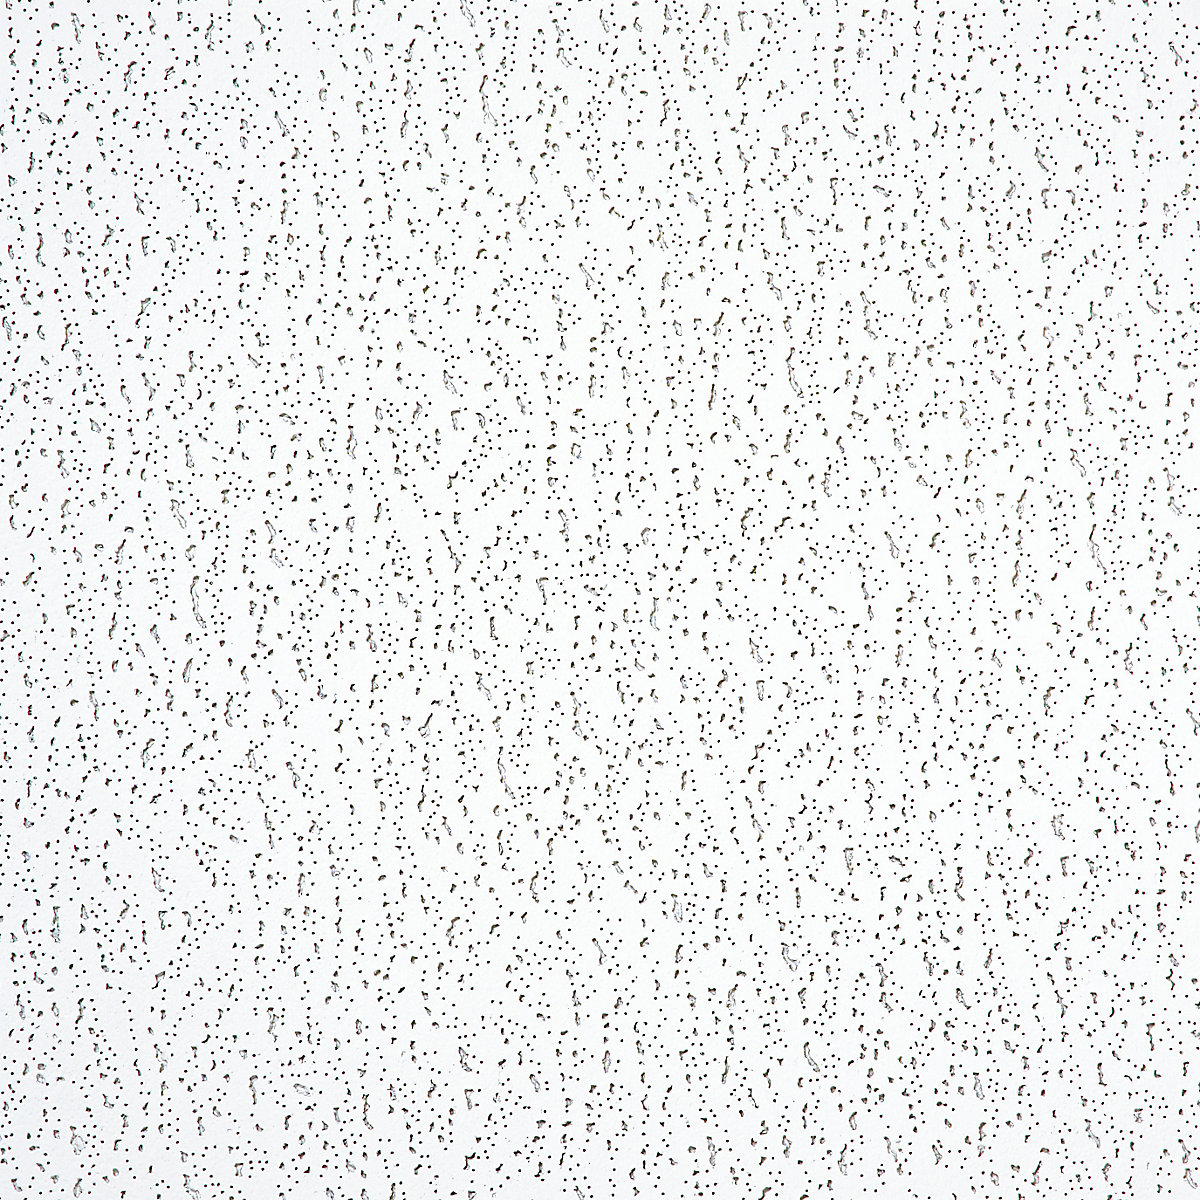 Element sufitowy z wkładanymi białymi płytami z włókien mineralnych